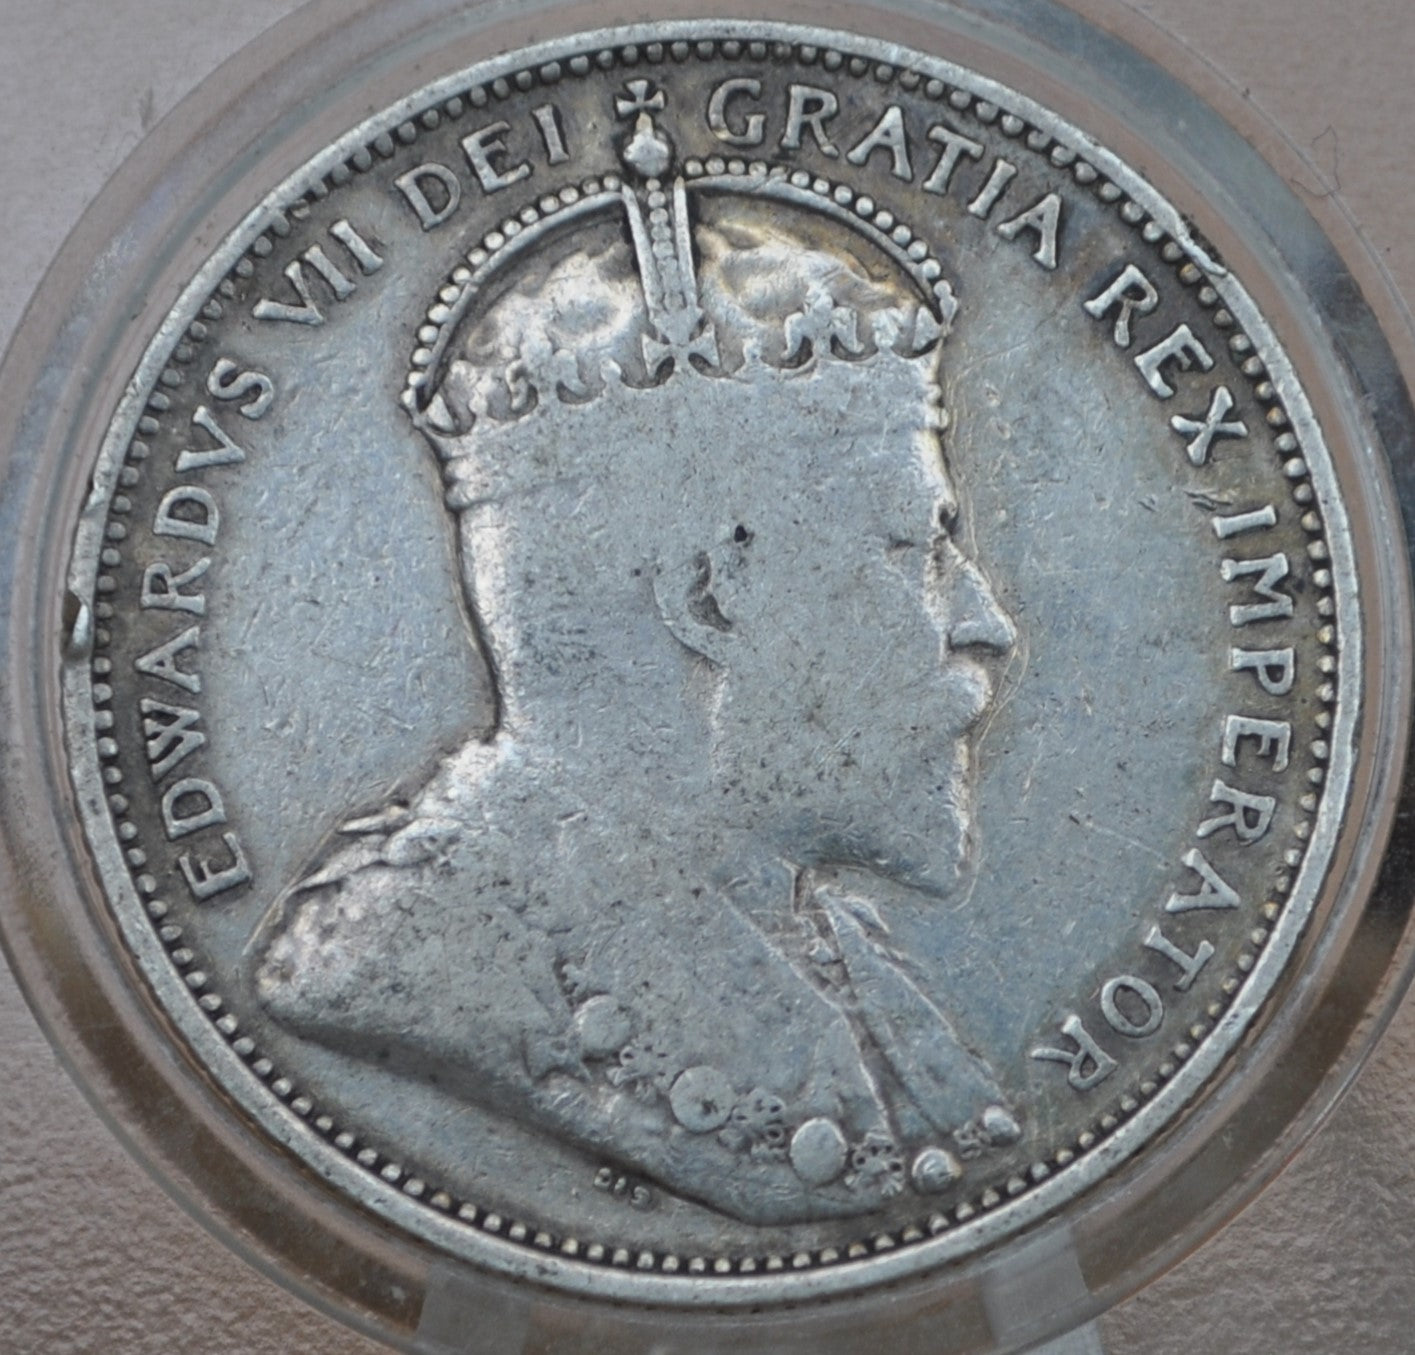 1910 Canadian Silver Quarter - F (Fine) Grade / Condition - King George - 92.5% Silver Quarter Canada - Canadian Coin Collection